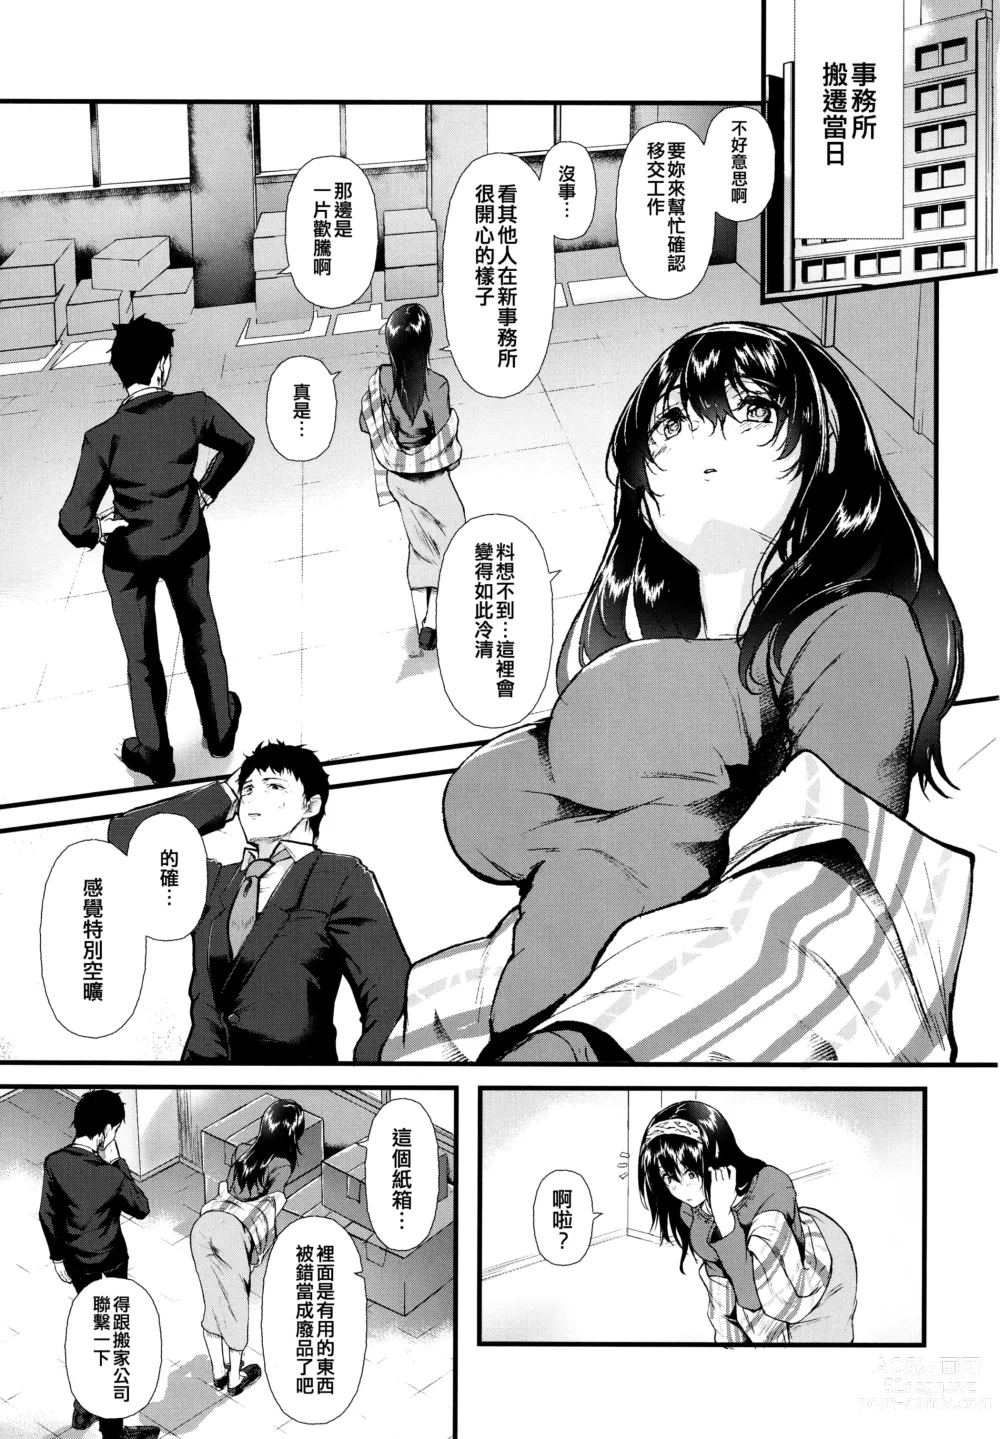 Page 3 of doujinshi Omoide wa Itsumo Kagayaite